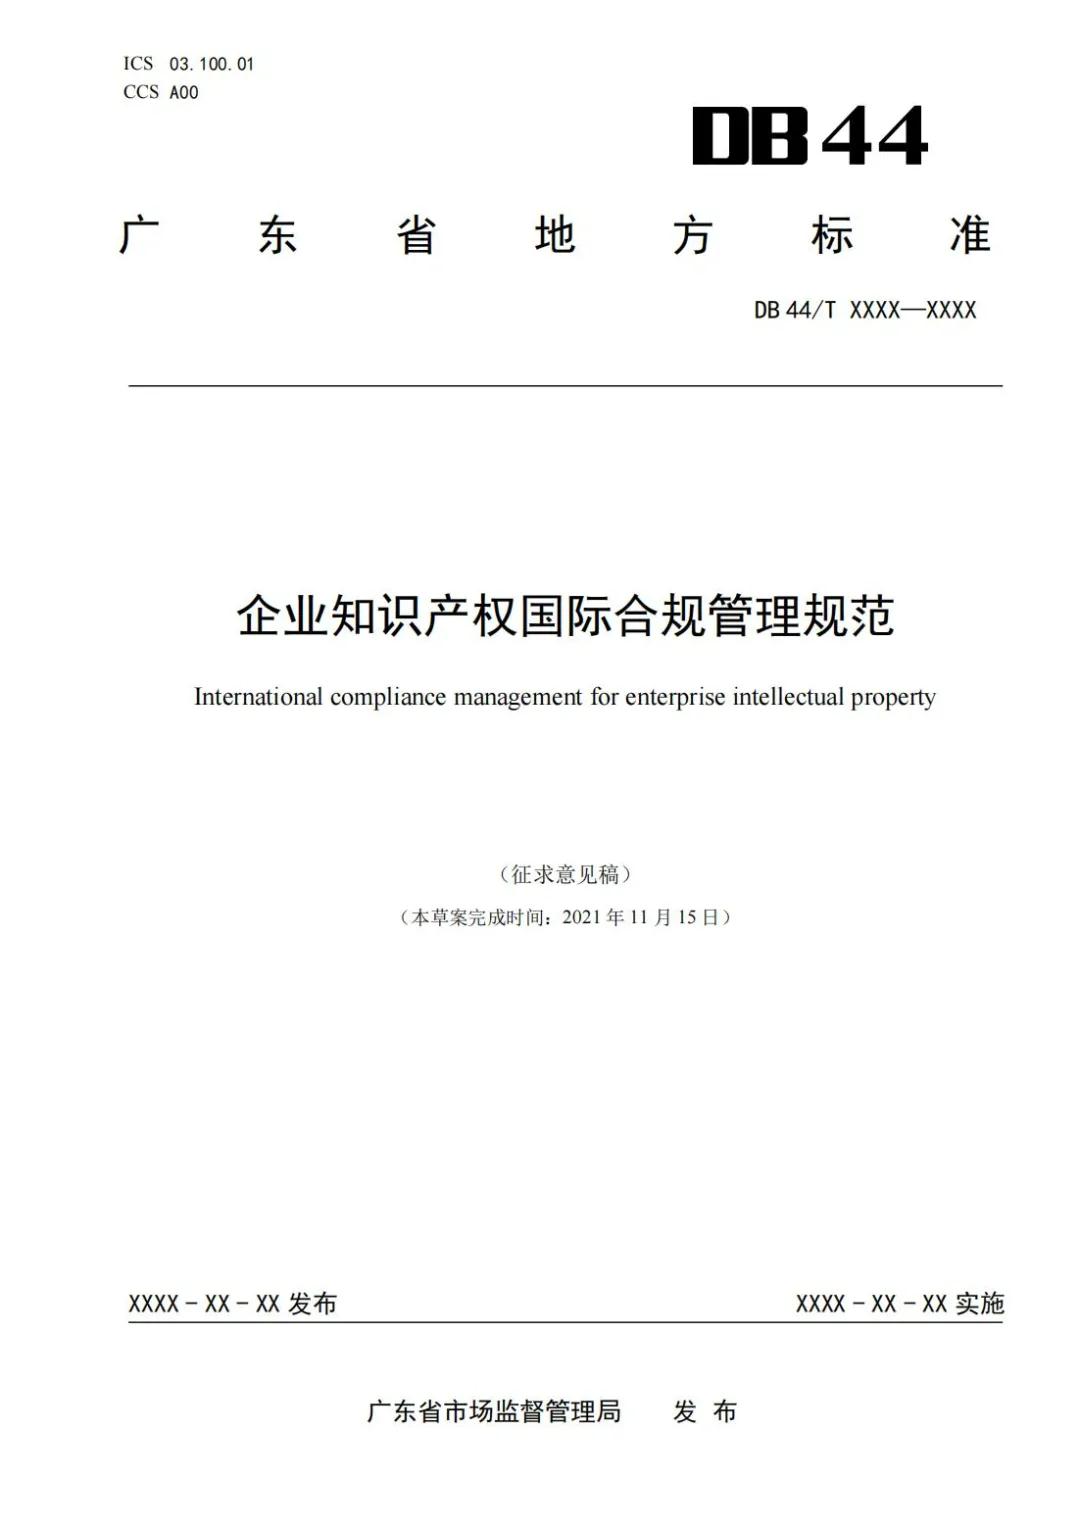 《企业知识产权国际合规管理规范（征求意见稿）》全文发布！